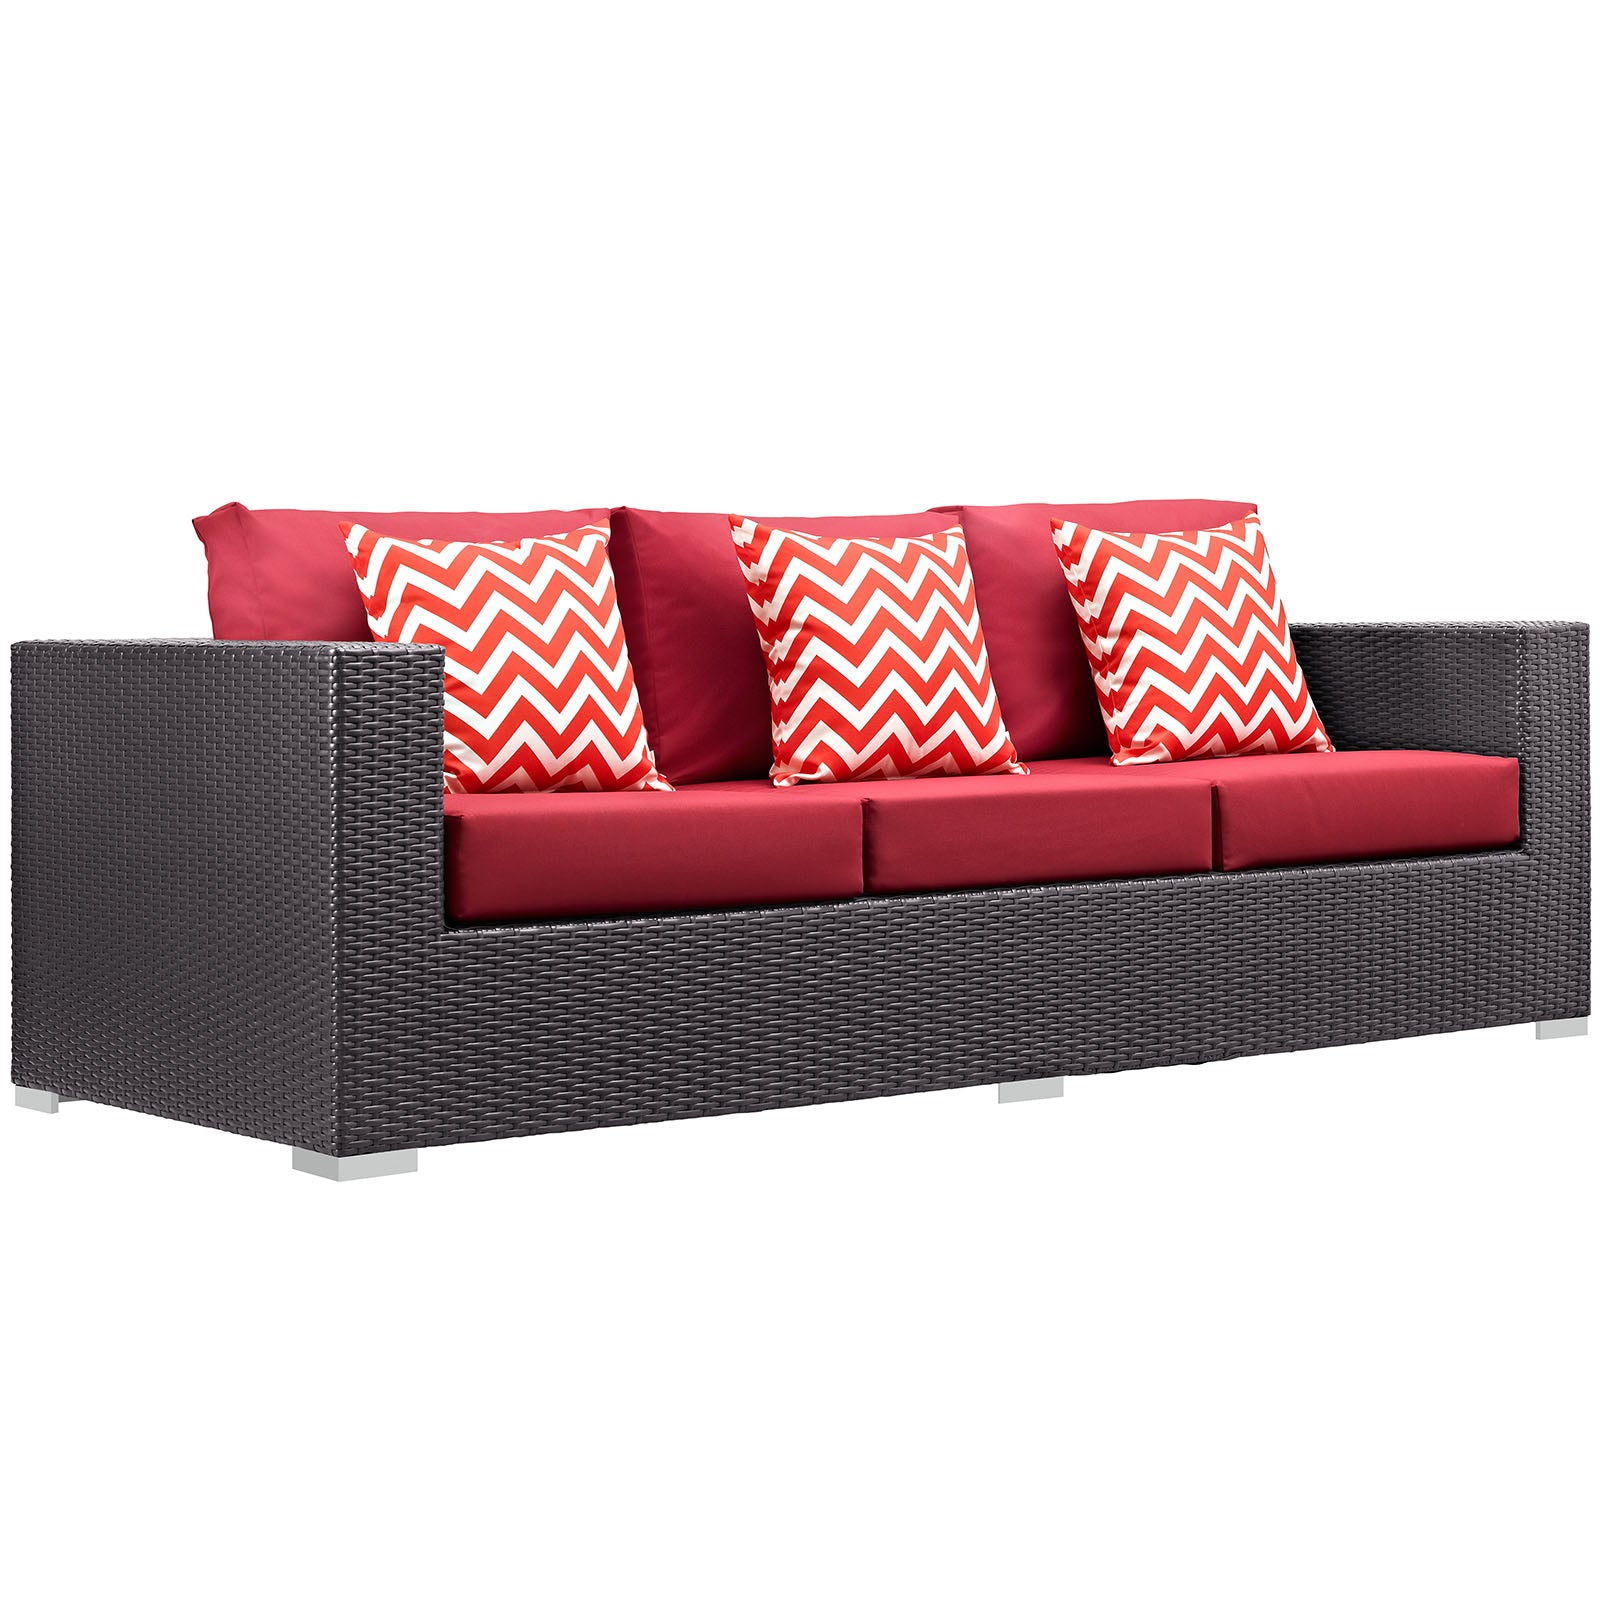 Modway Outdoor Conversation Sets - Convene 3 Piece Outdoor Patio Sofa Set Espresso & Red